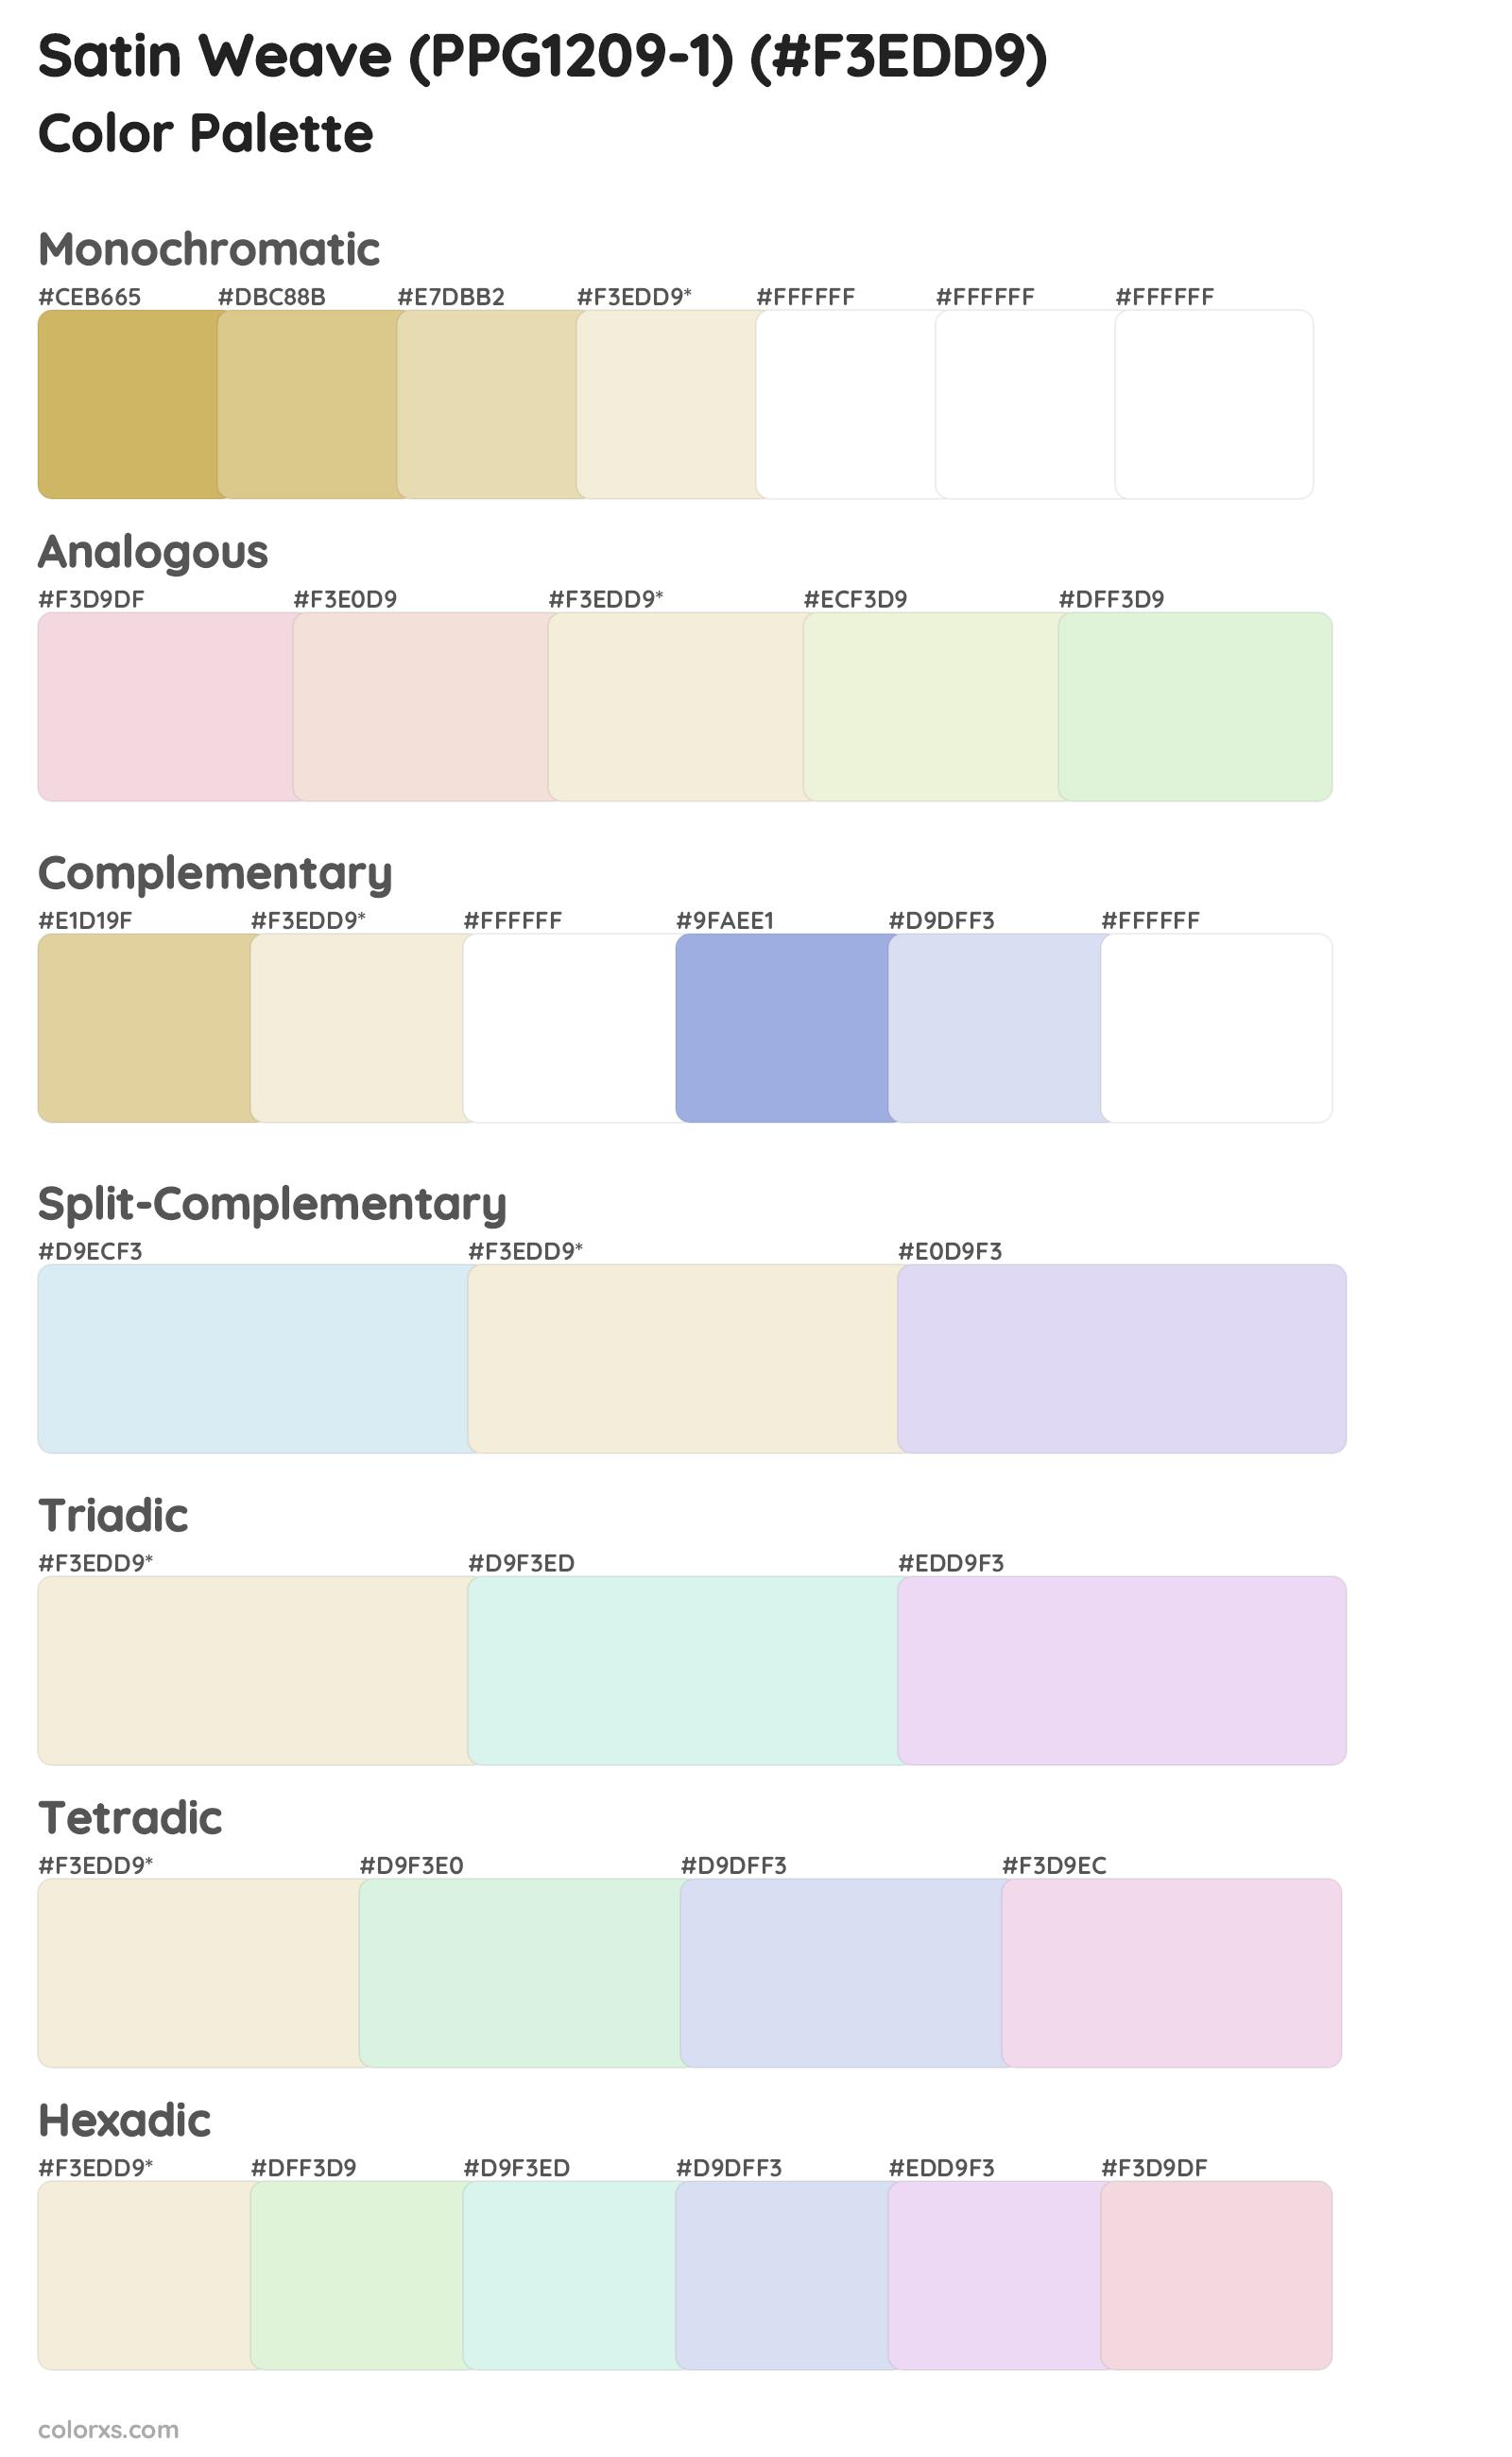 Satin Weave (PPG1209-1) Color Scheme Palettes